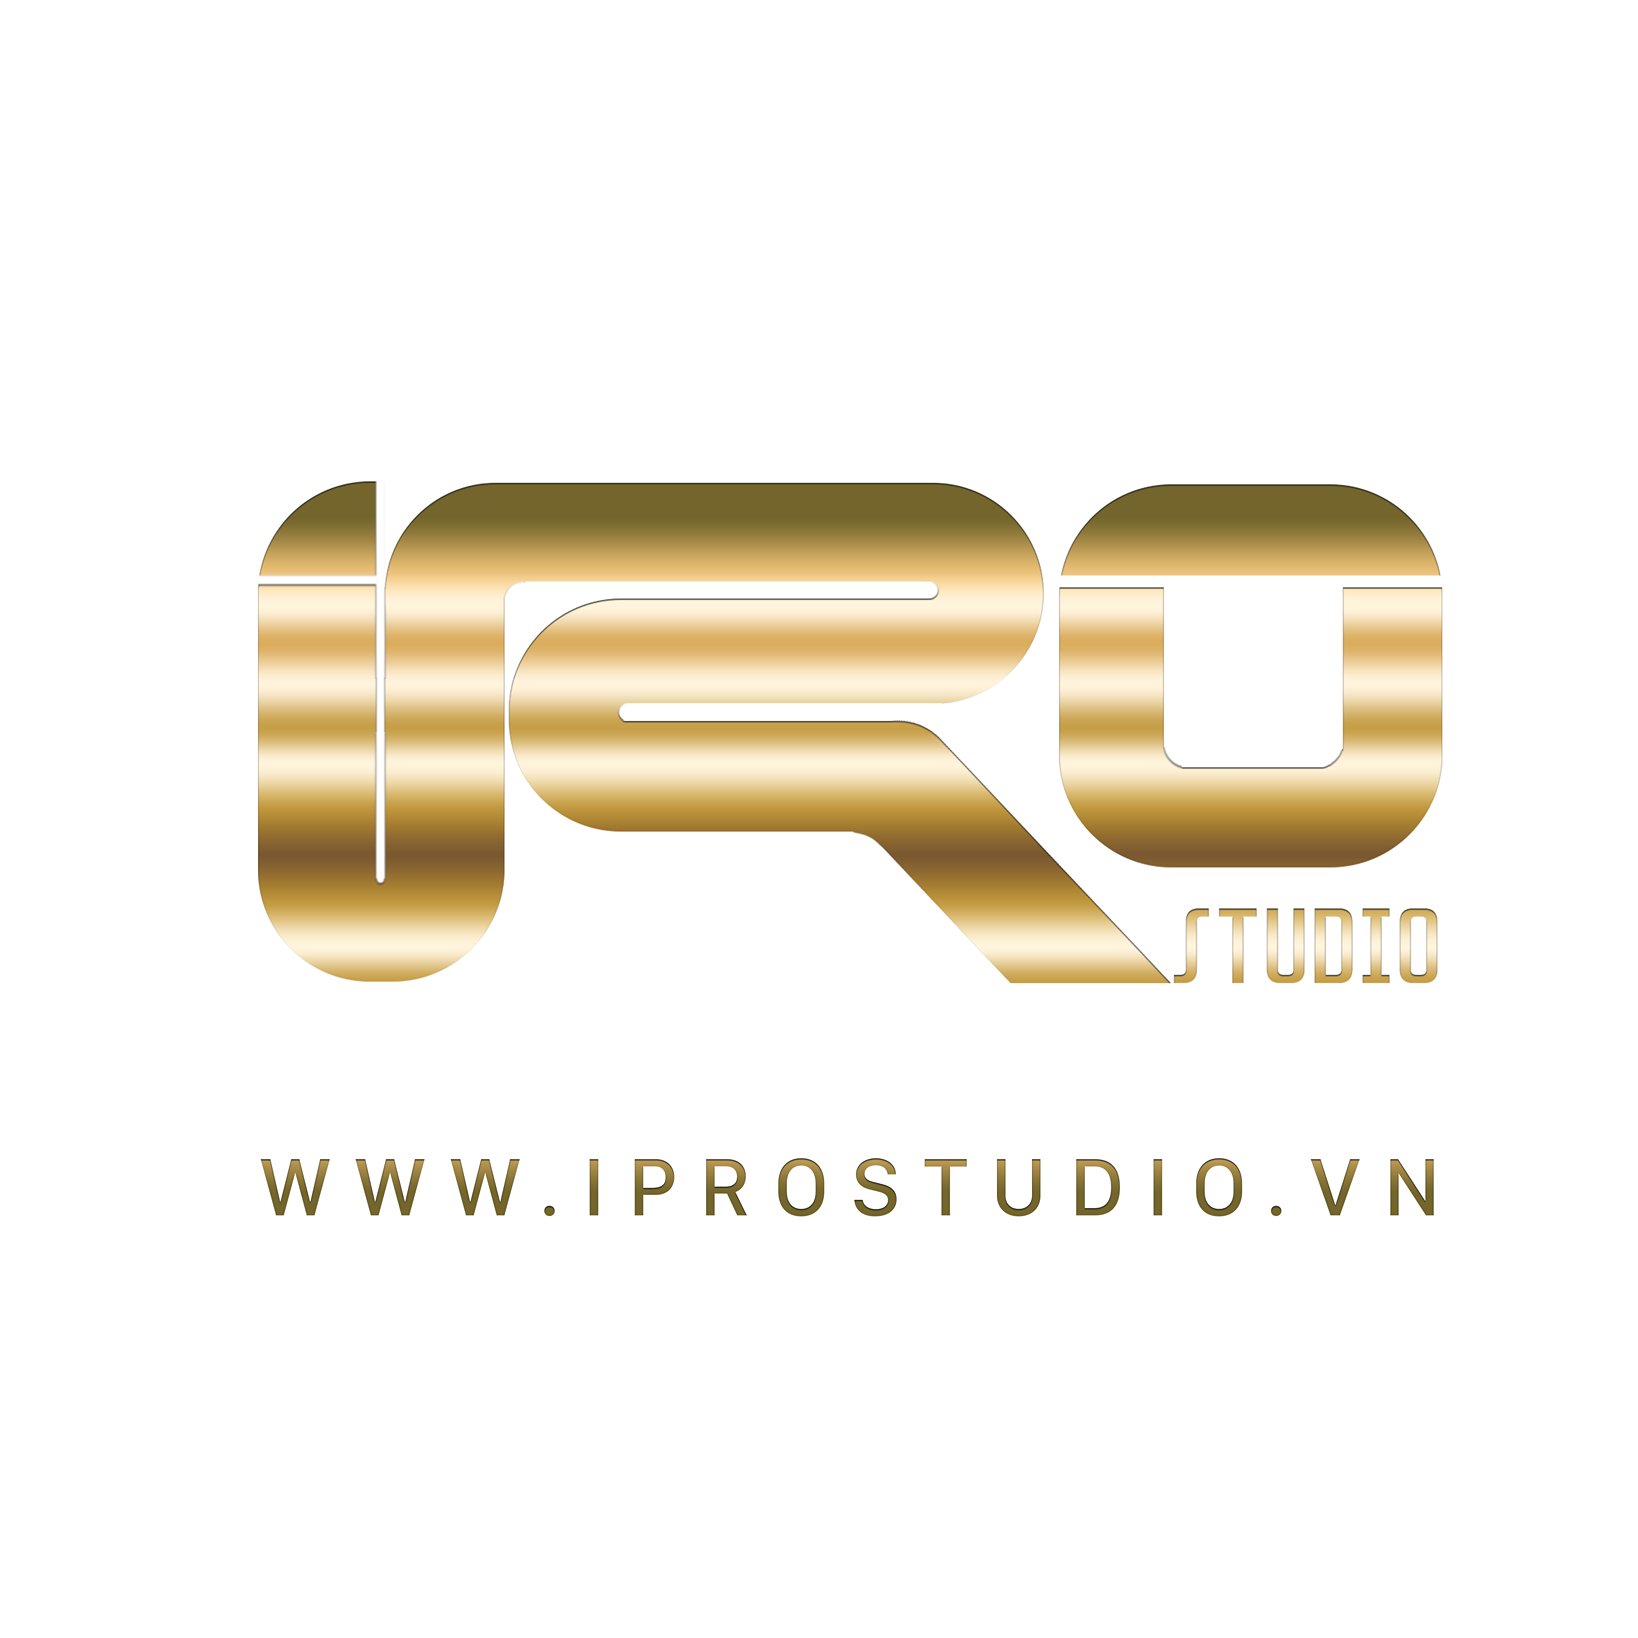 ipro studio